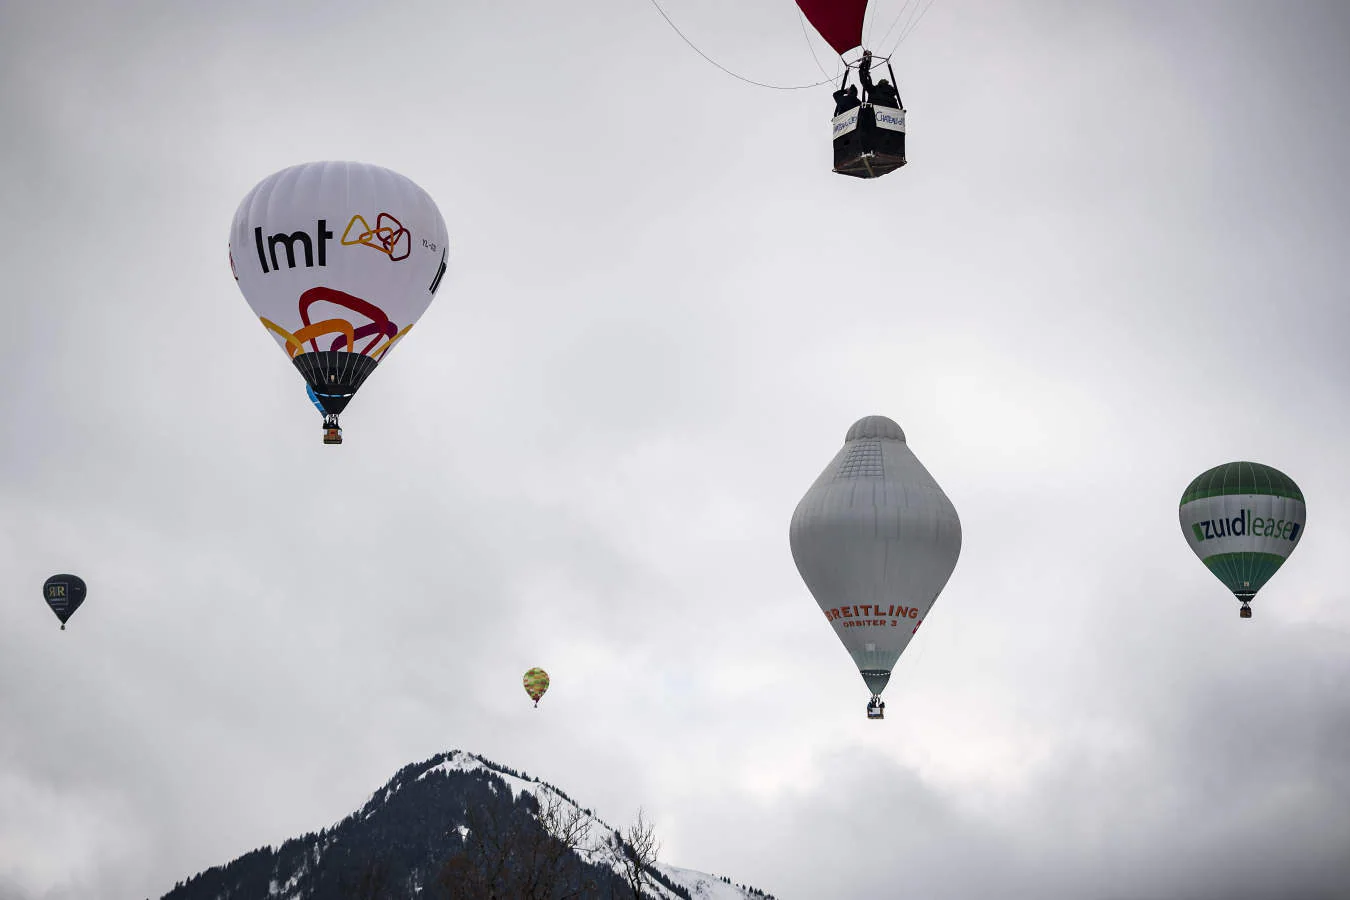 Globos aerostáticos durante el 41º Festival Internacional de Globos Aerostáticos que se está celebrando en la estación de esquí de Chateau d'Oex, en los Alpes suizos. Setenta globos de quince países participan en el evento.